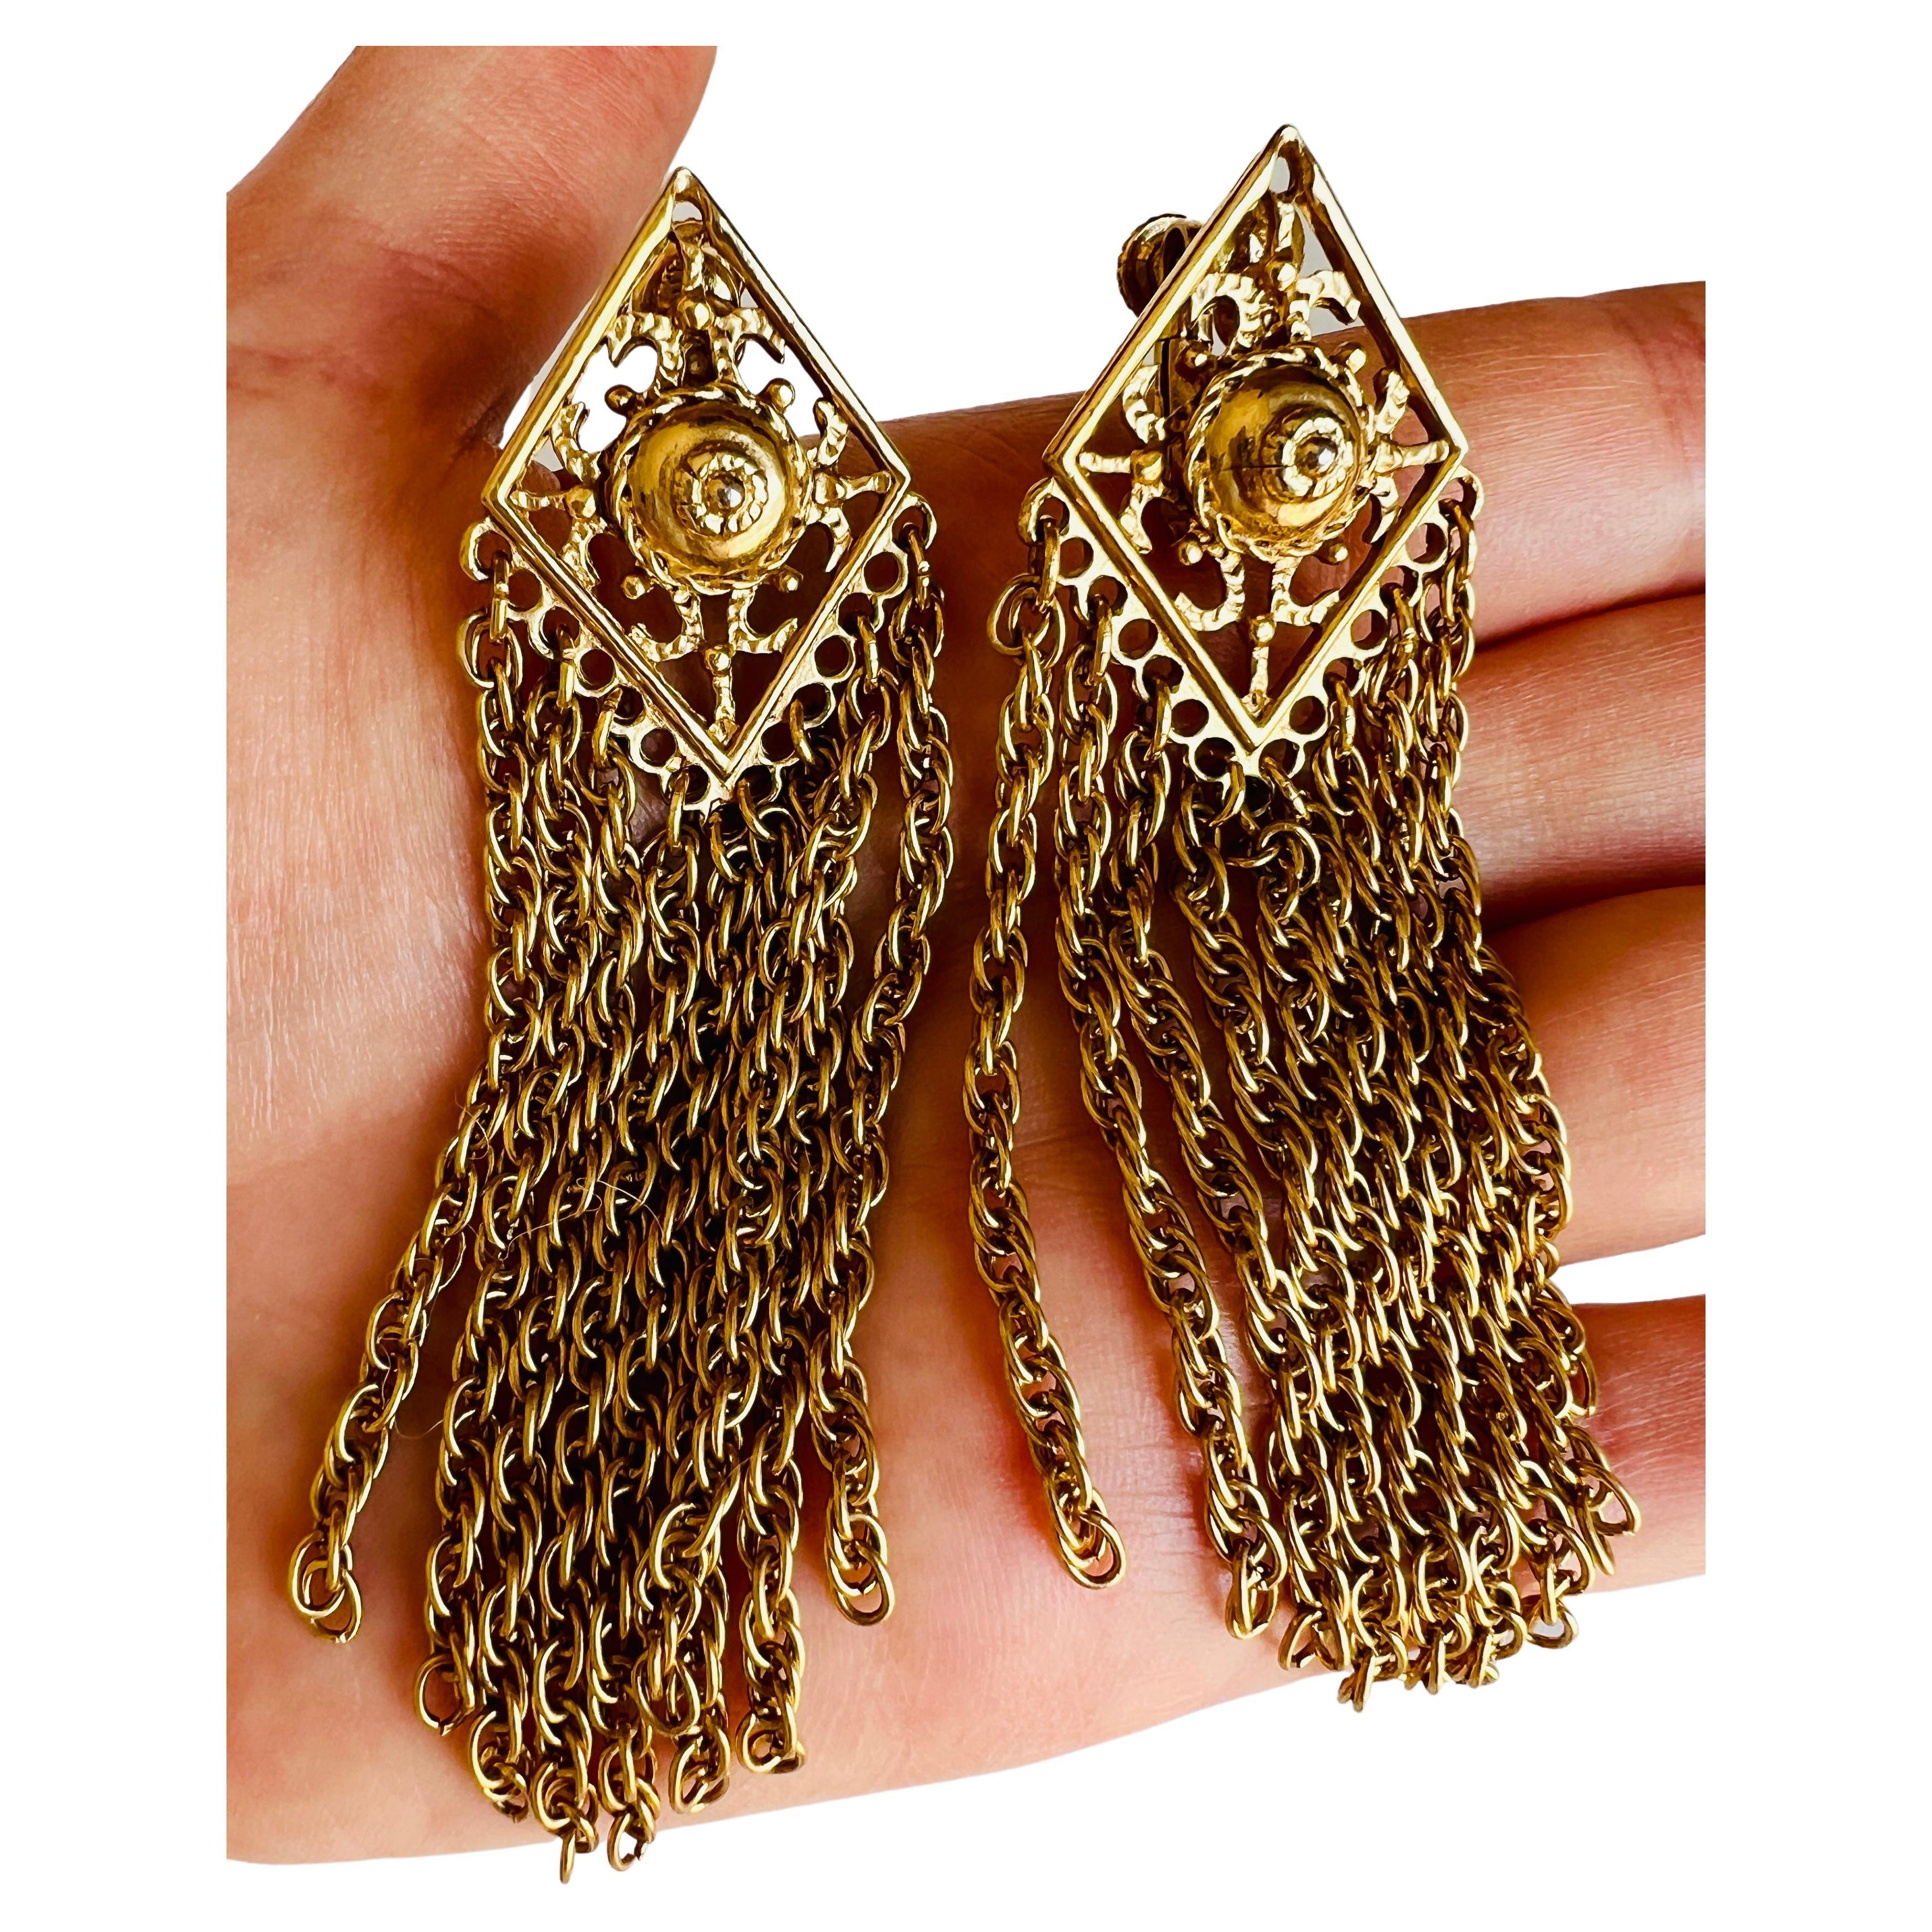 Elegantes Paar vergoldete Ketten-Ohrringe mit verstellbarem Clip-Verschluss. 

Größe: Leichter Unterschied in der Länge (1/4